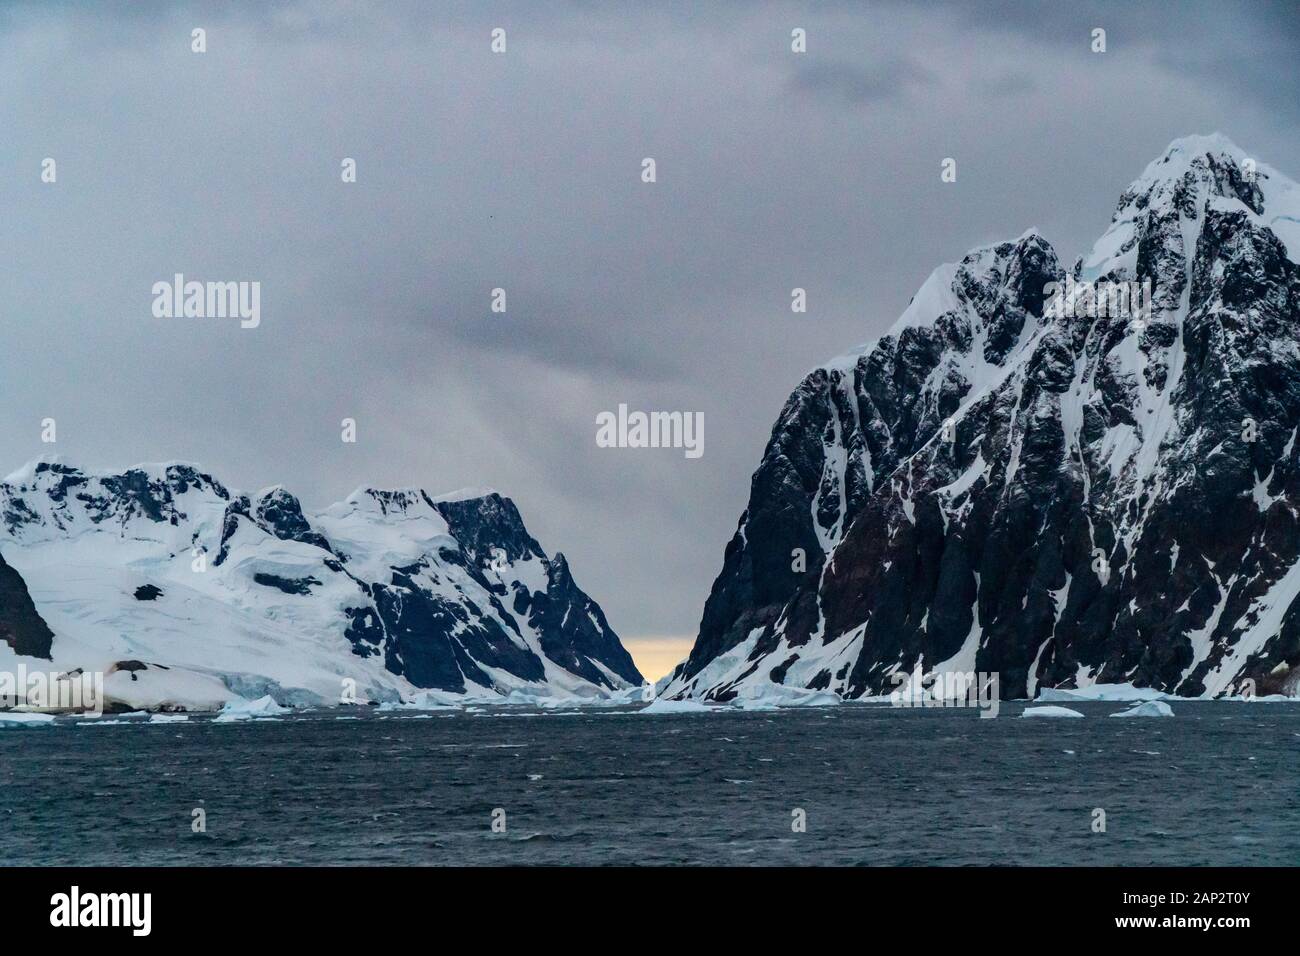 Schmelzenden Eisbergs aufgrund der globalen Erwärmung im südlichen Atlantik, Antarktis Stockfoto